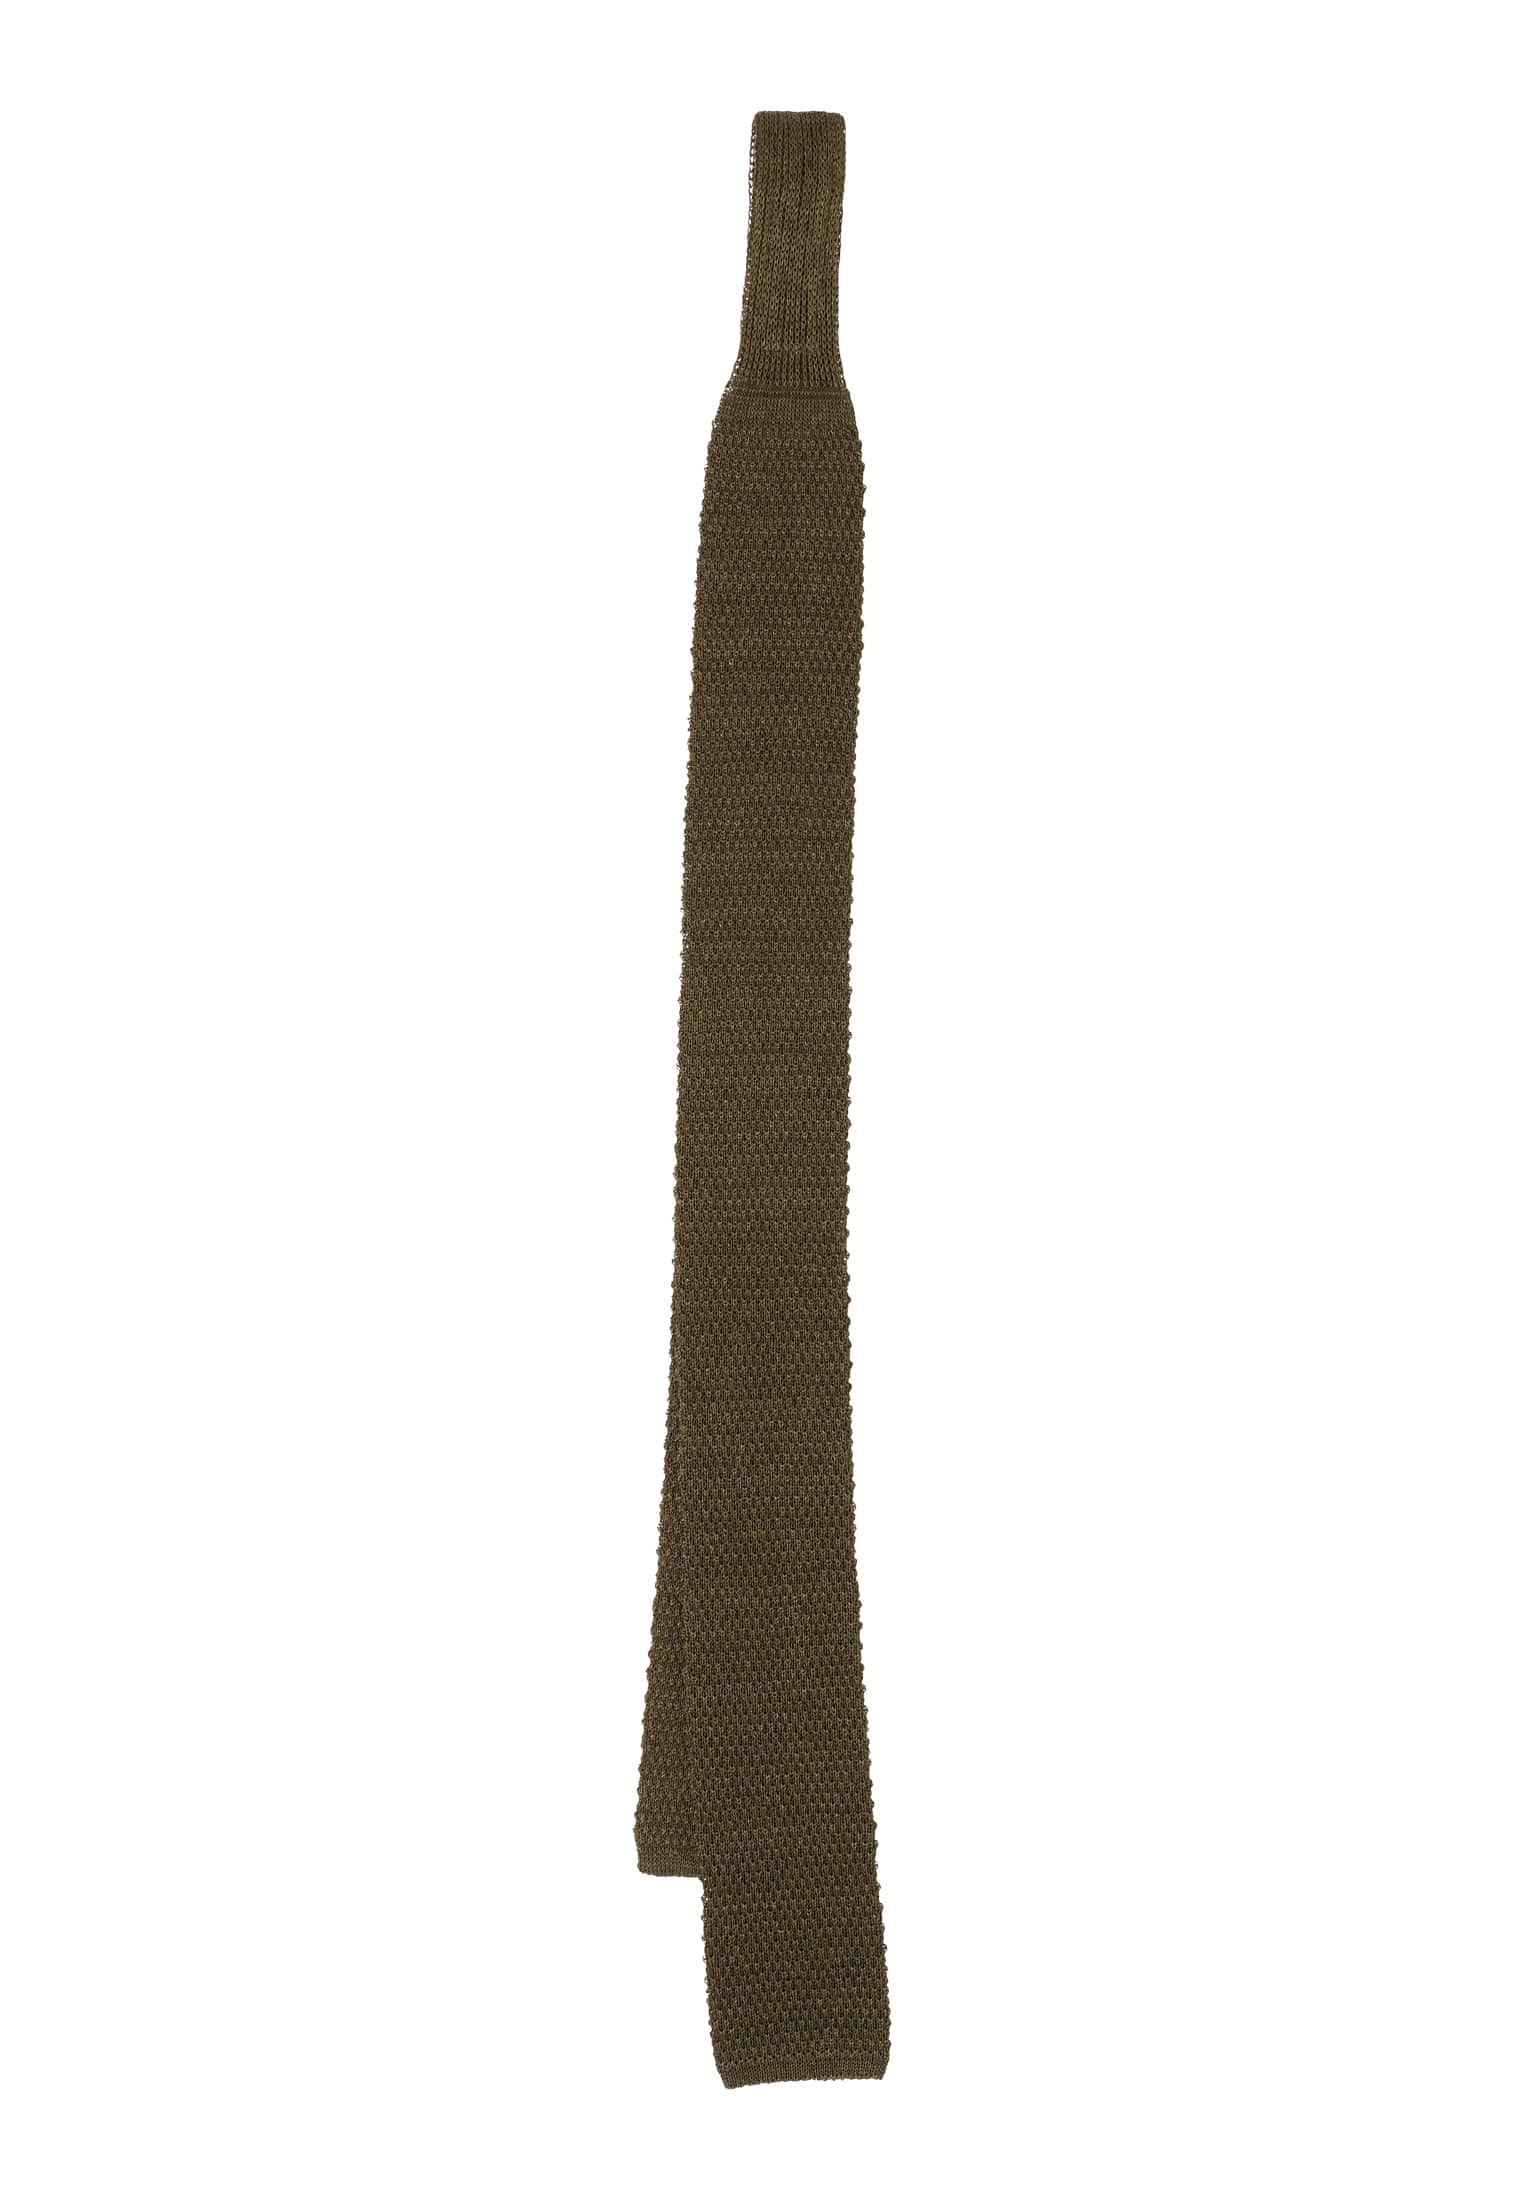 Krawatte in khaki unifarben | khaki | 142 | 1AC02004-04-52-142